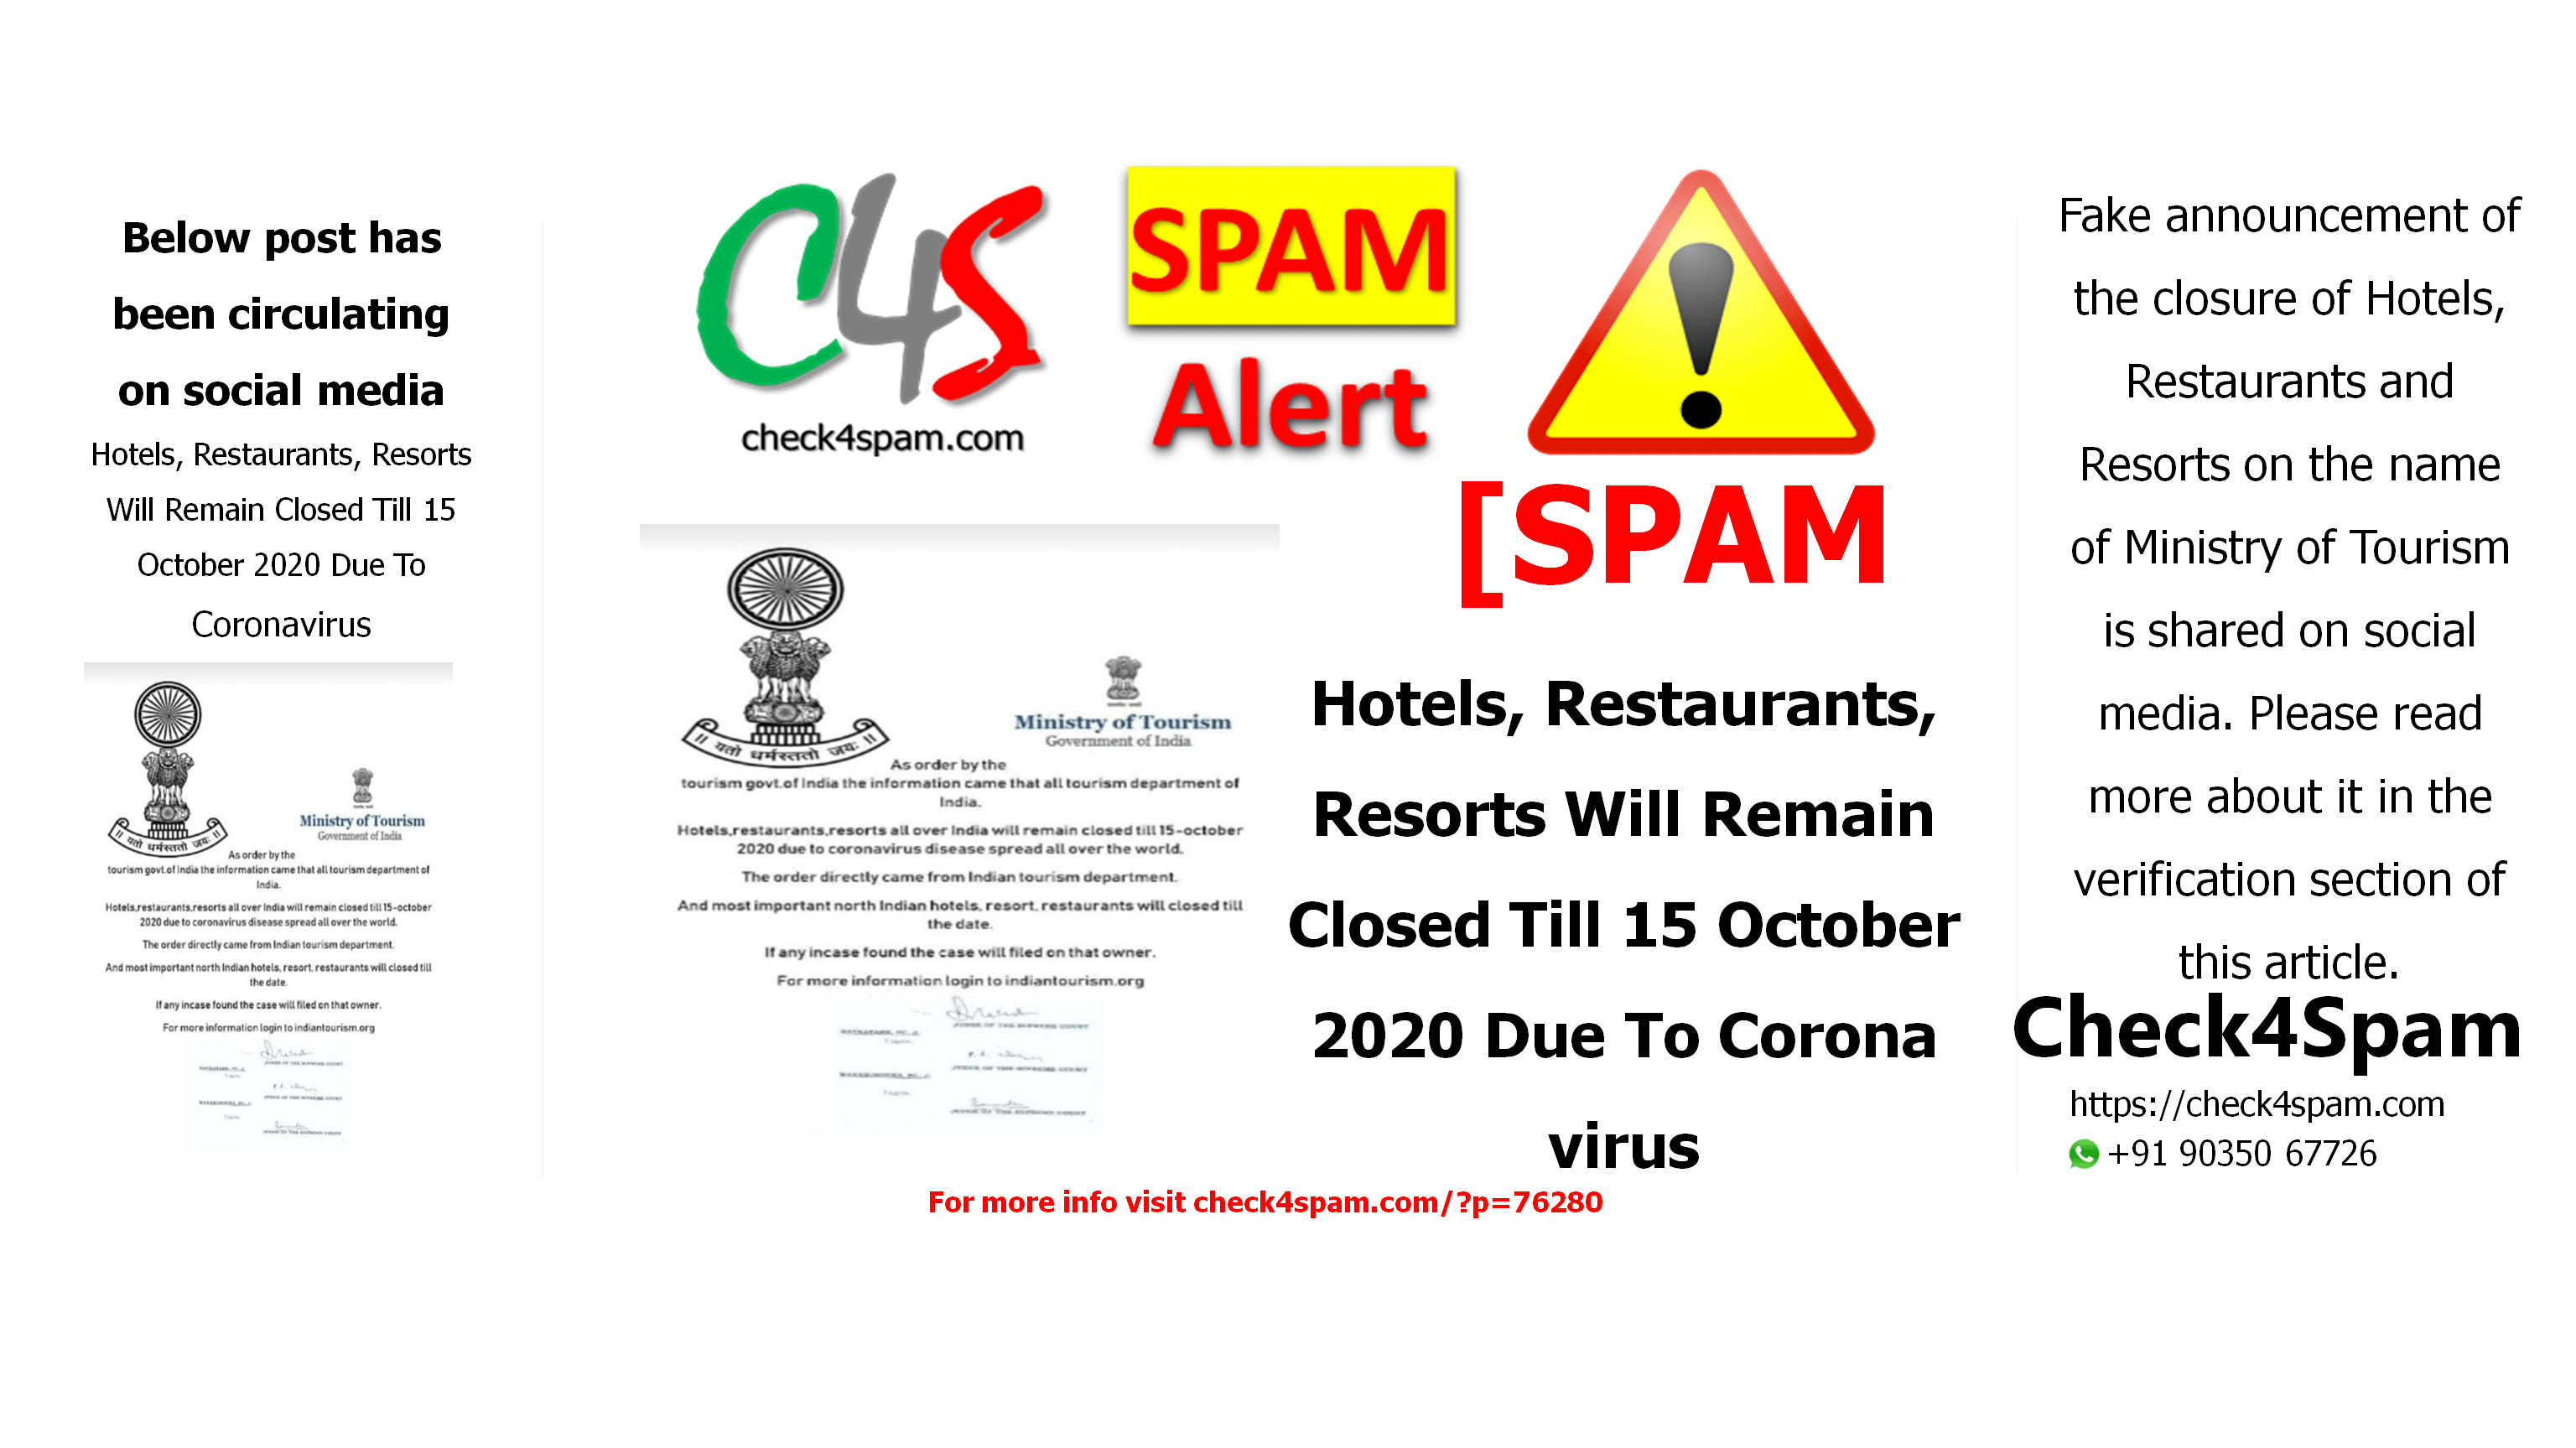 Hotels, Restaurants, Resorts Will Remain Closed Till 15 October 2020 Due To Coronavirus